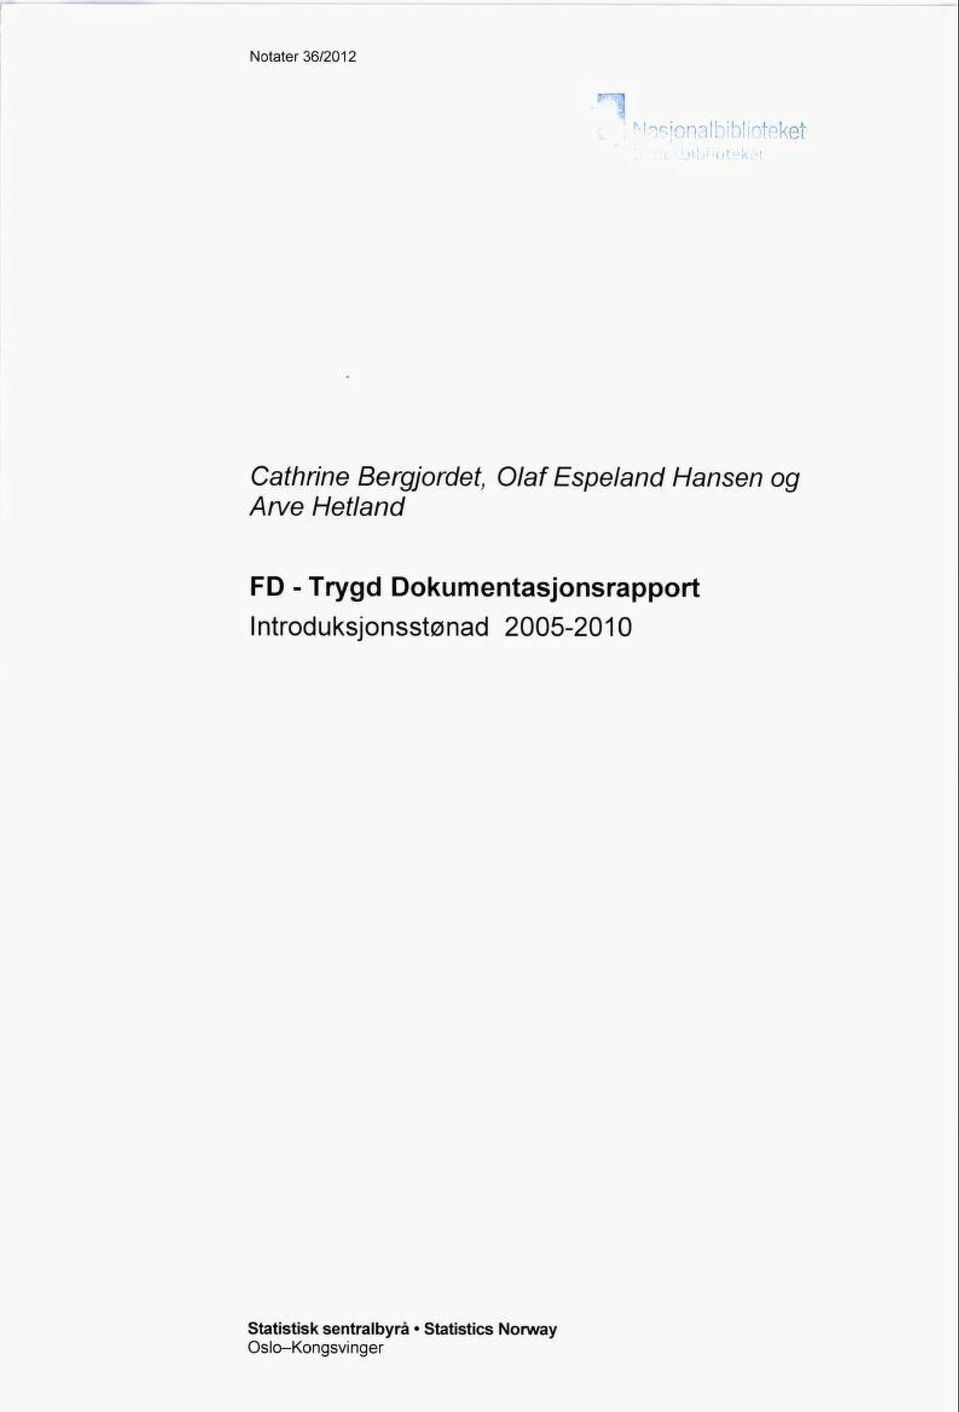 Hetland FD - Trygd Dokumentasjonsrapport